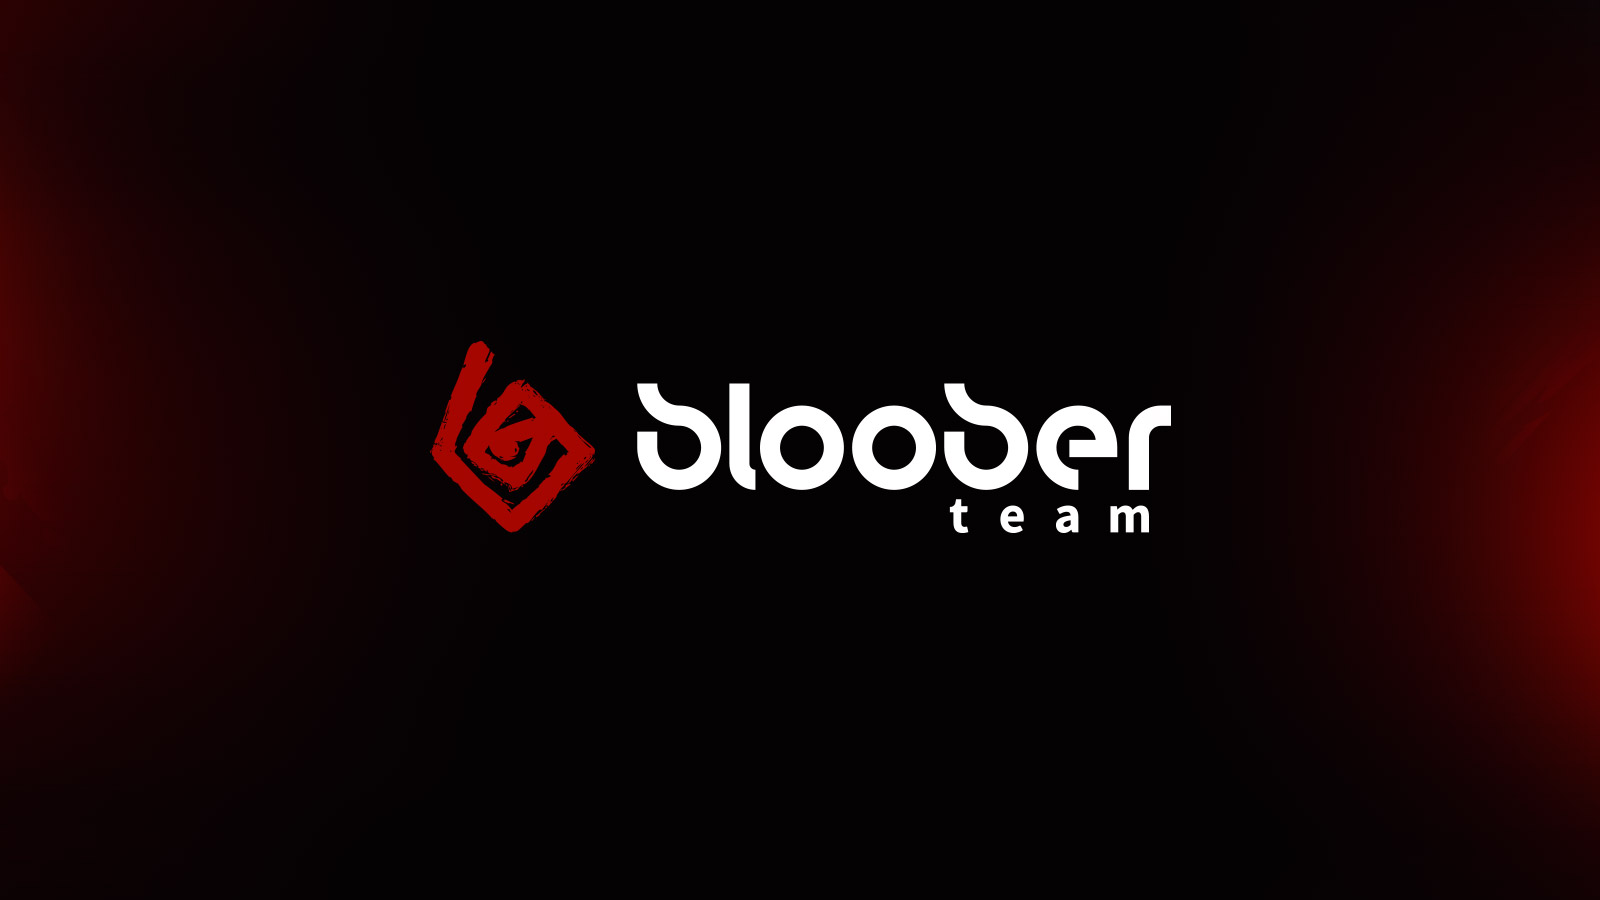 Bloober Team يعلن عن تعاون جديد مع Rogue Games للعمل على مشروع جديد